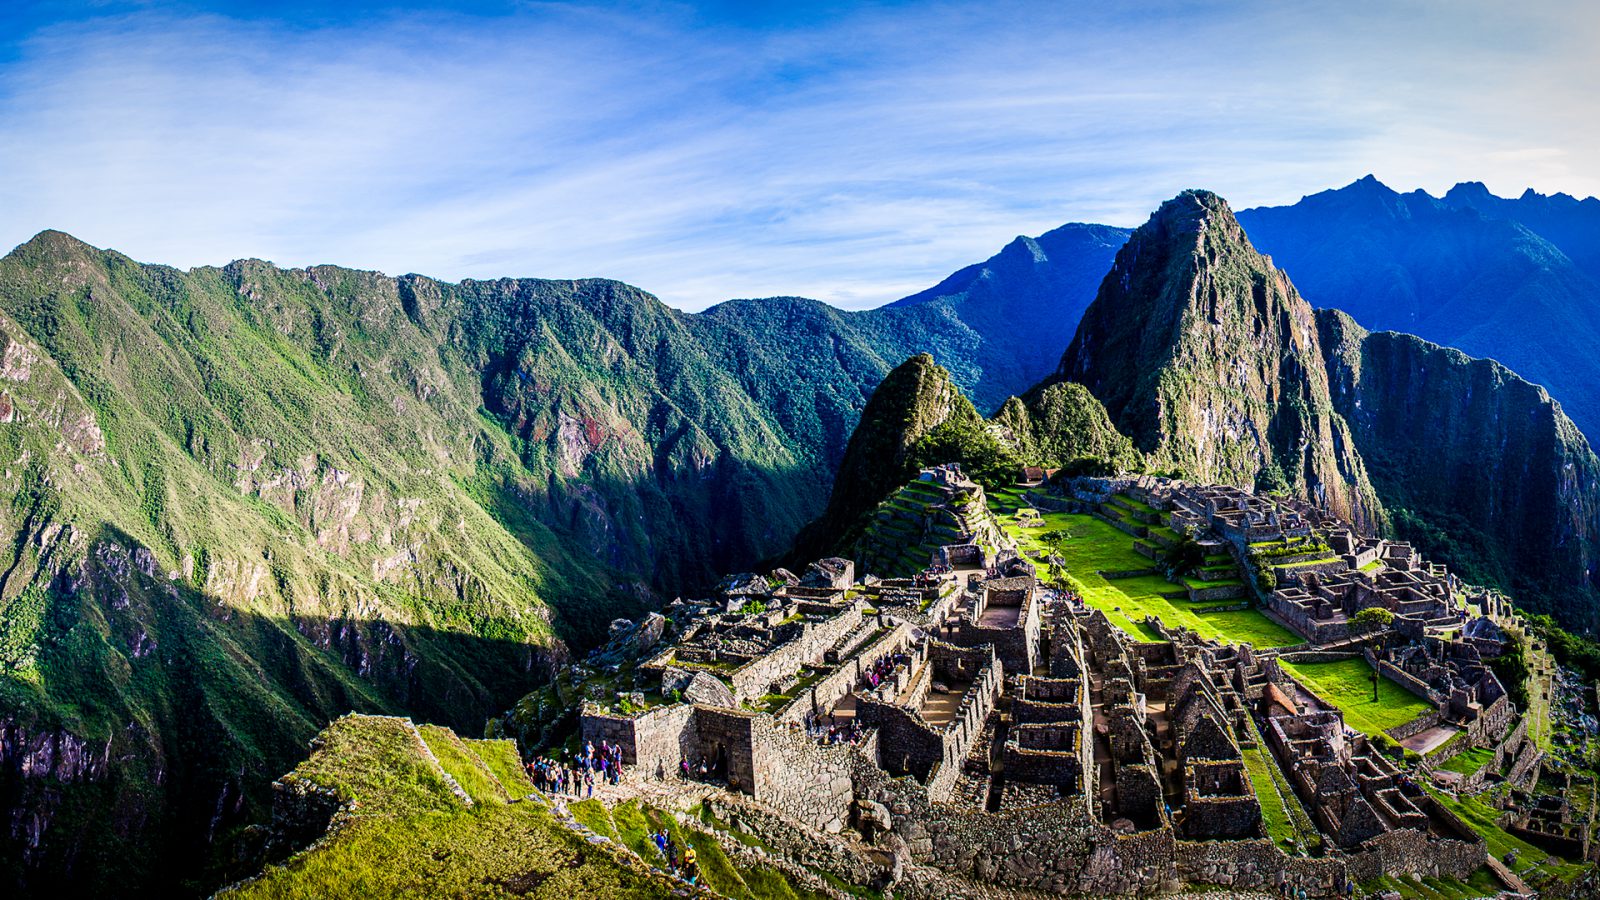 Guests-admiring-Machu-Picchu-in-